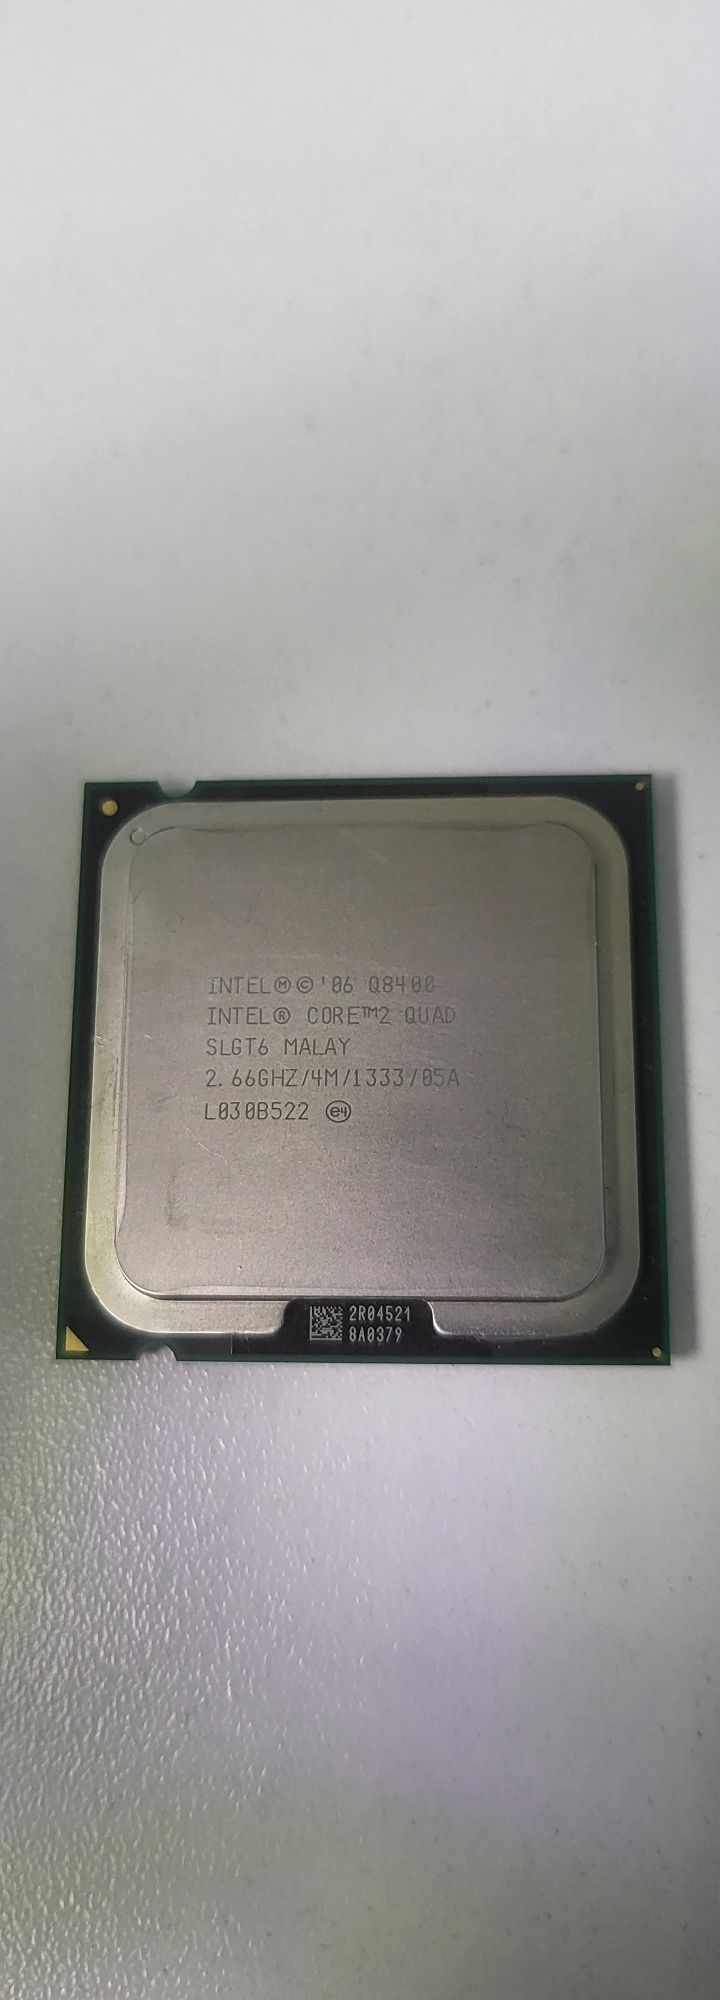 Procesor Core 2 Quad Core Q8400 socket 775